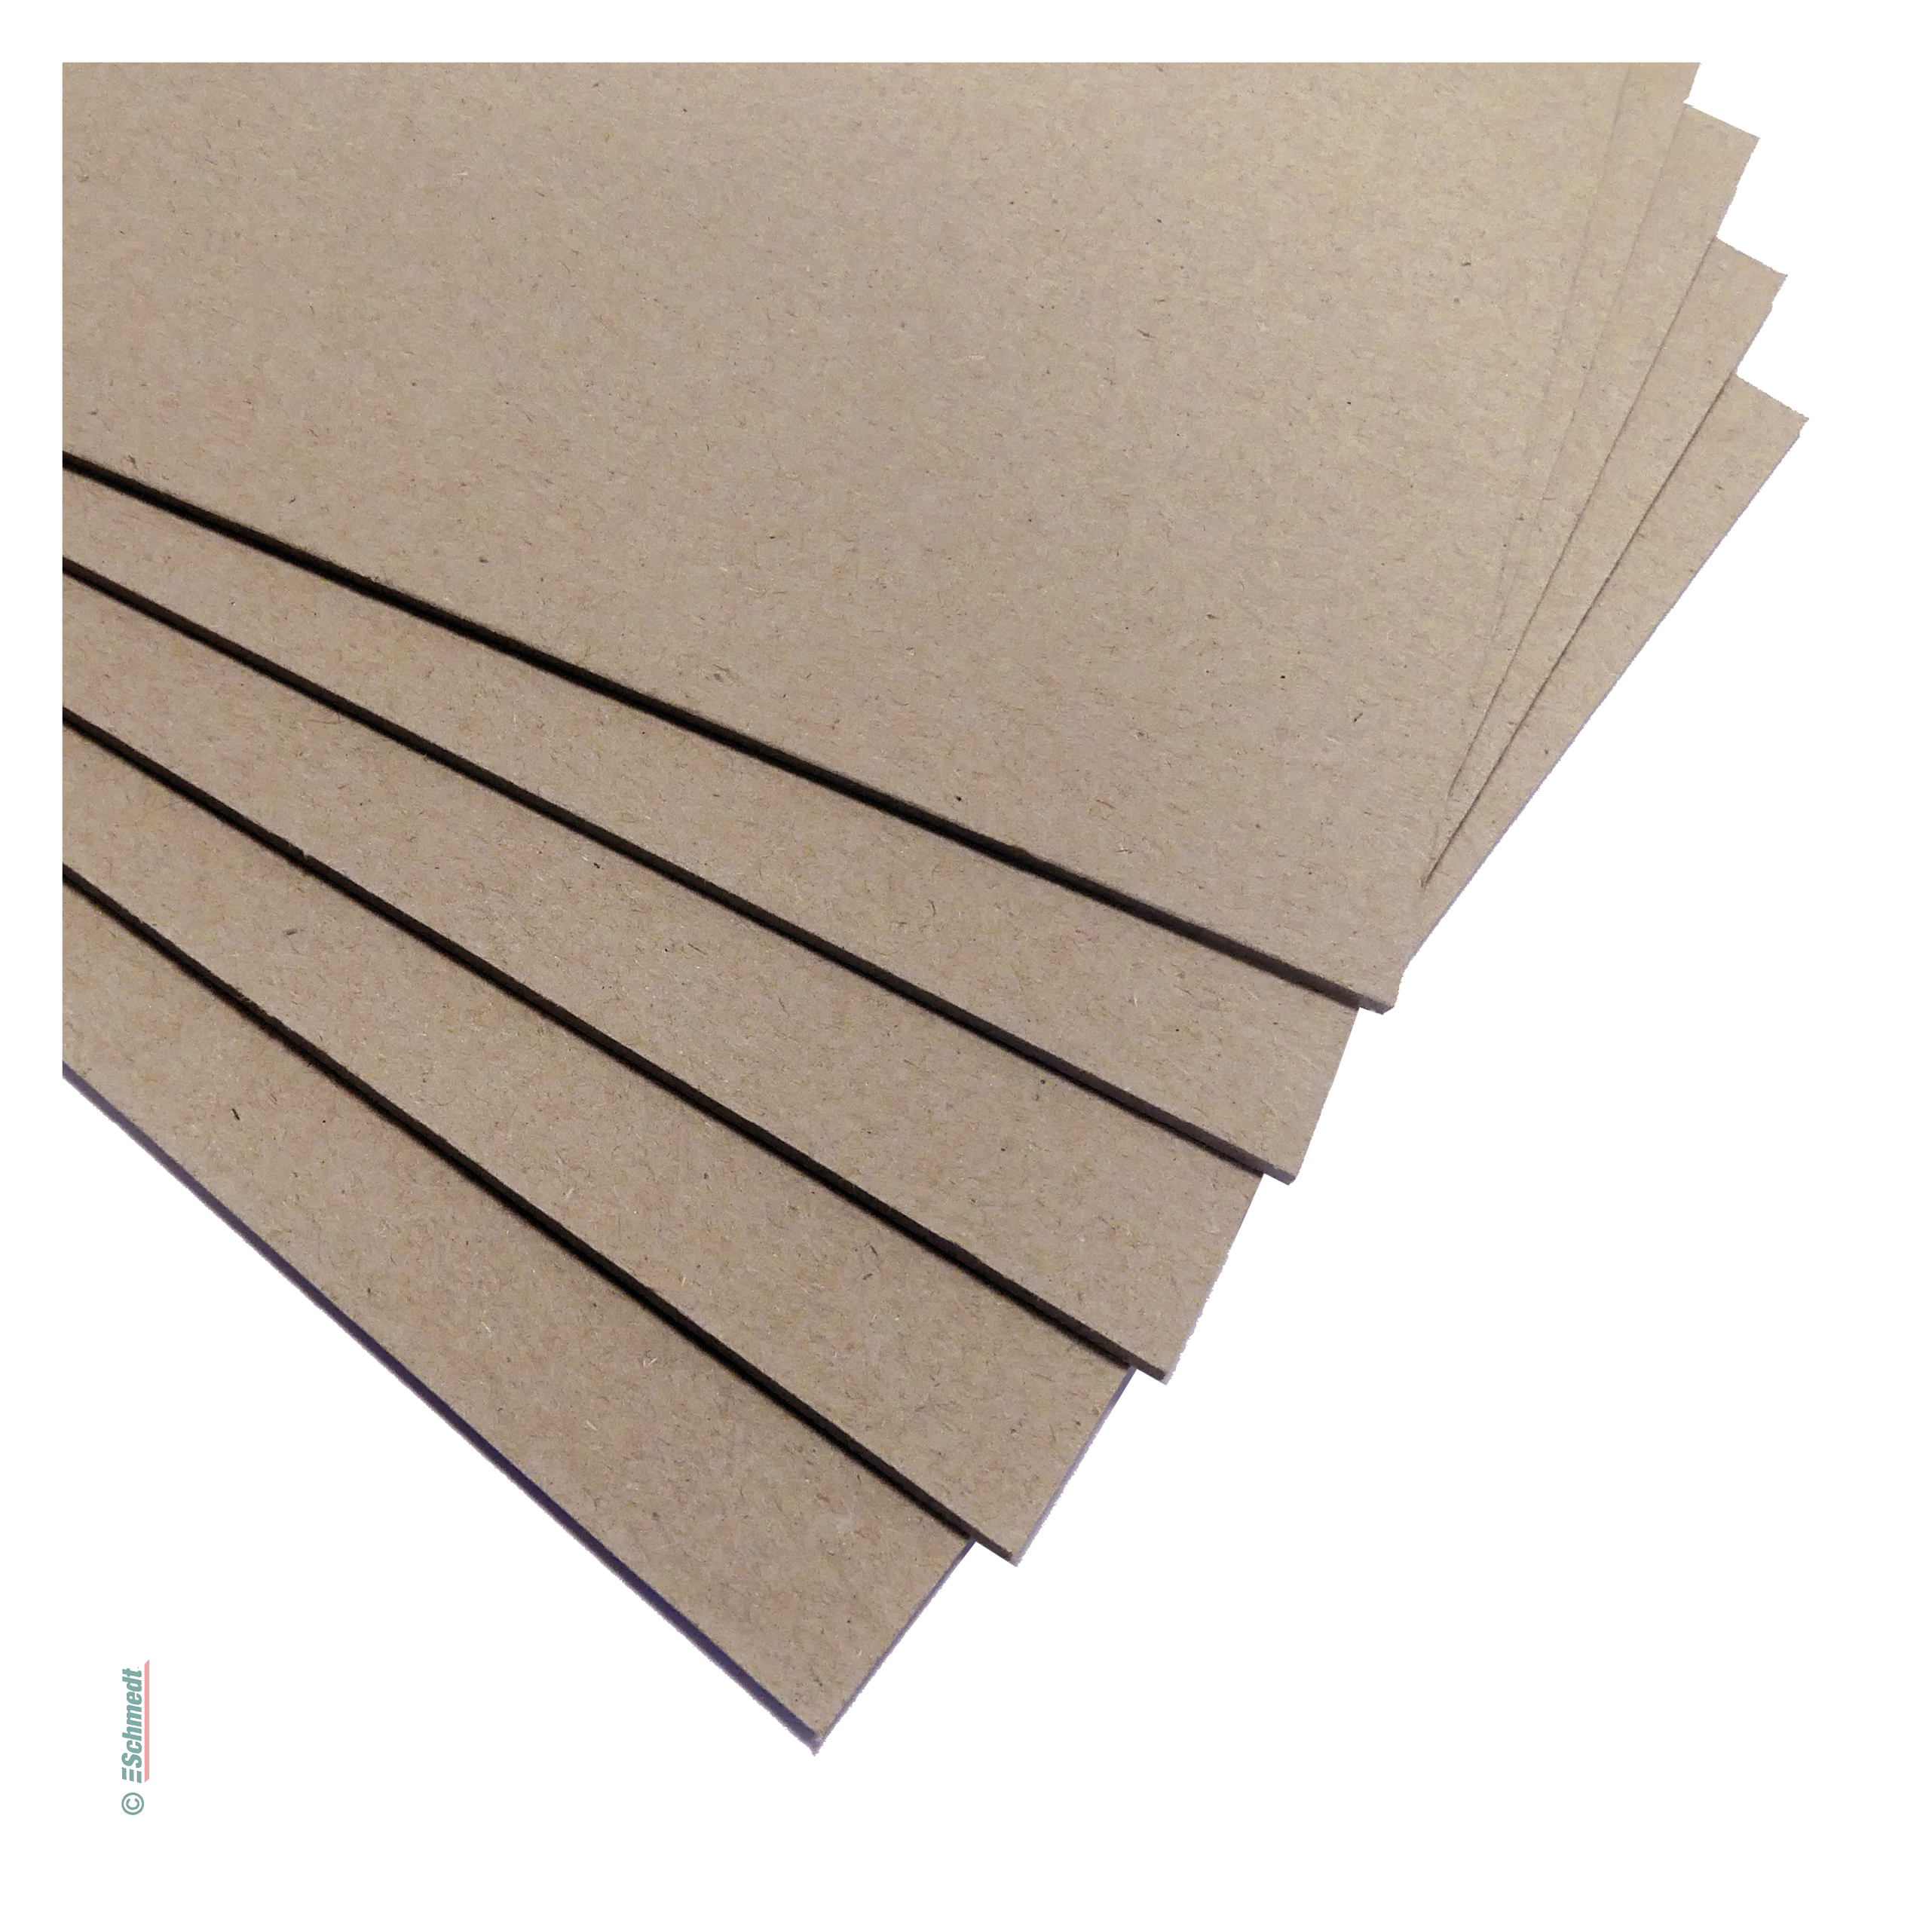 Graupappe, leichte Qualität / Bogenware - Buchbinderpappe, beidseitig glatt - für die Fertigung von Hardcover-Buchdecken (Buchdeckel und Buc...